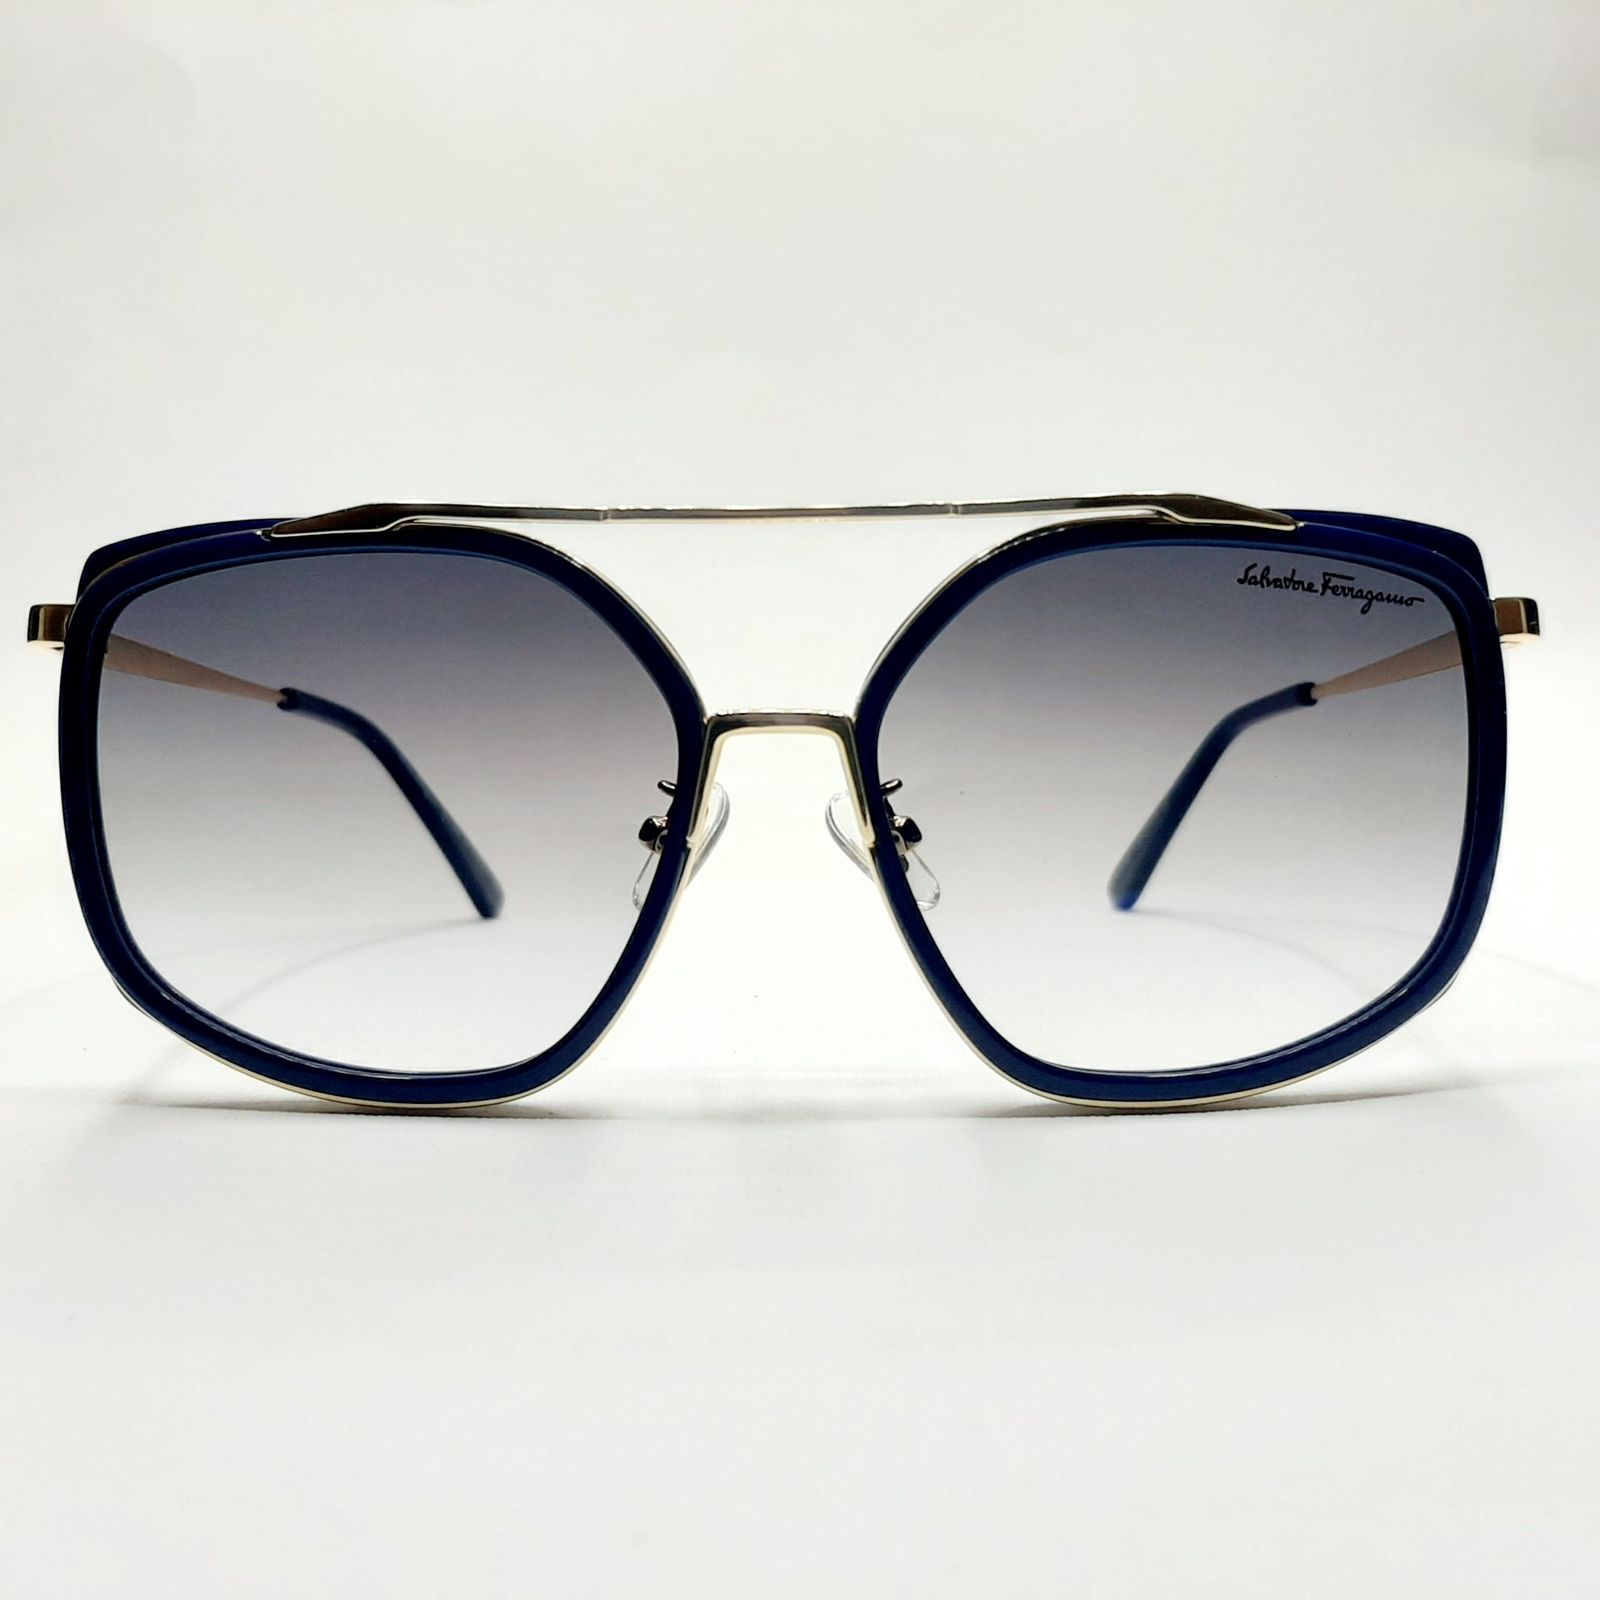 عینک آفتابی سالواتوره فراگامو مدل SF8068c6 -  - 2